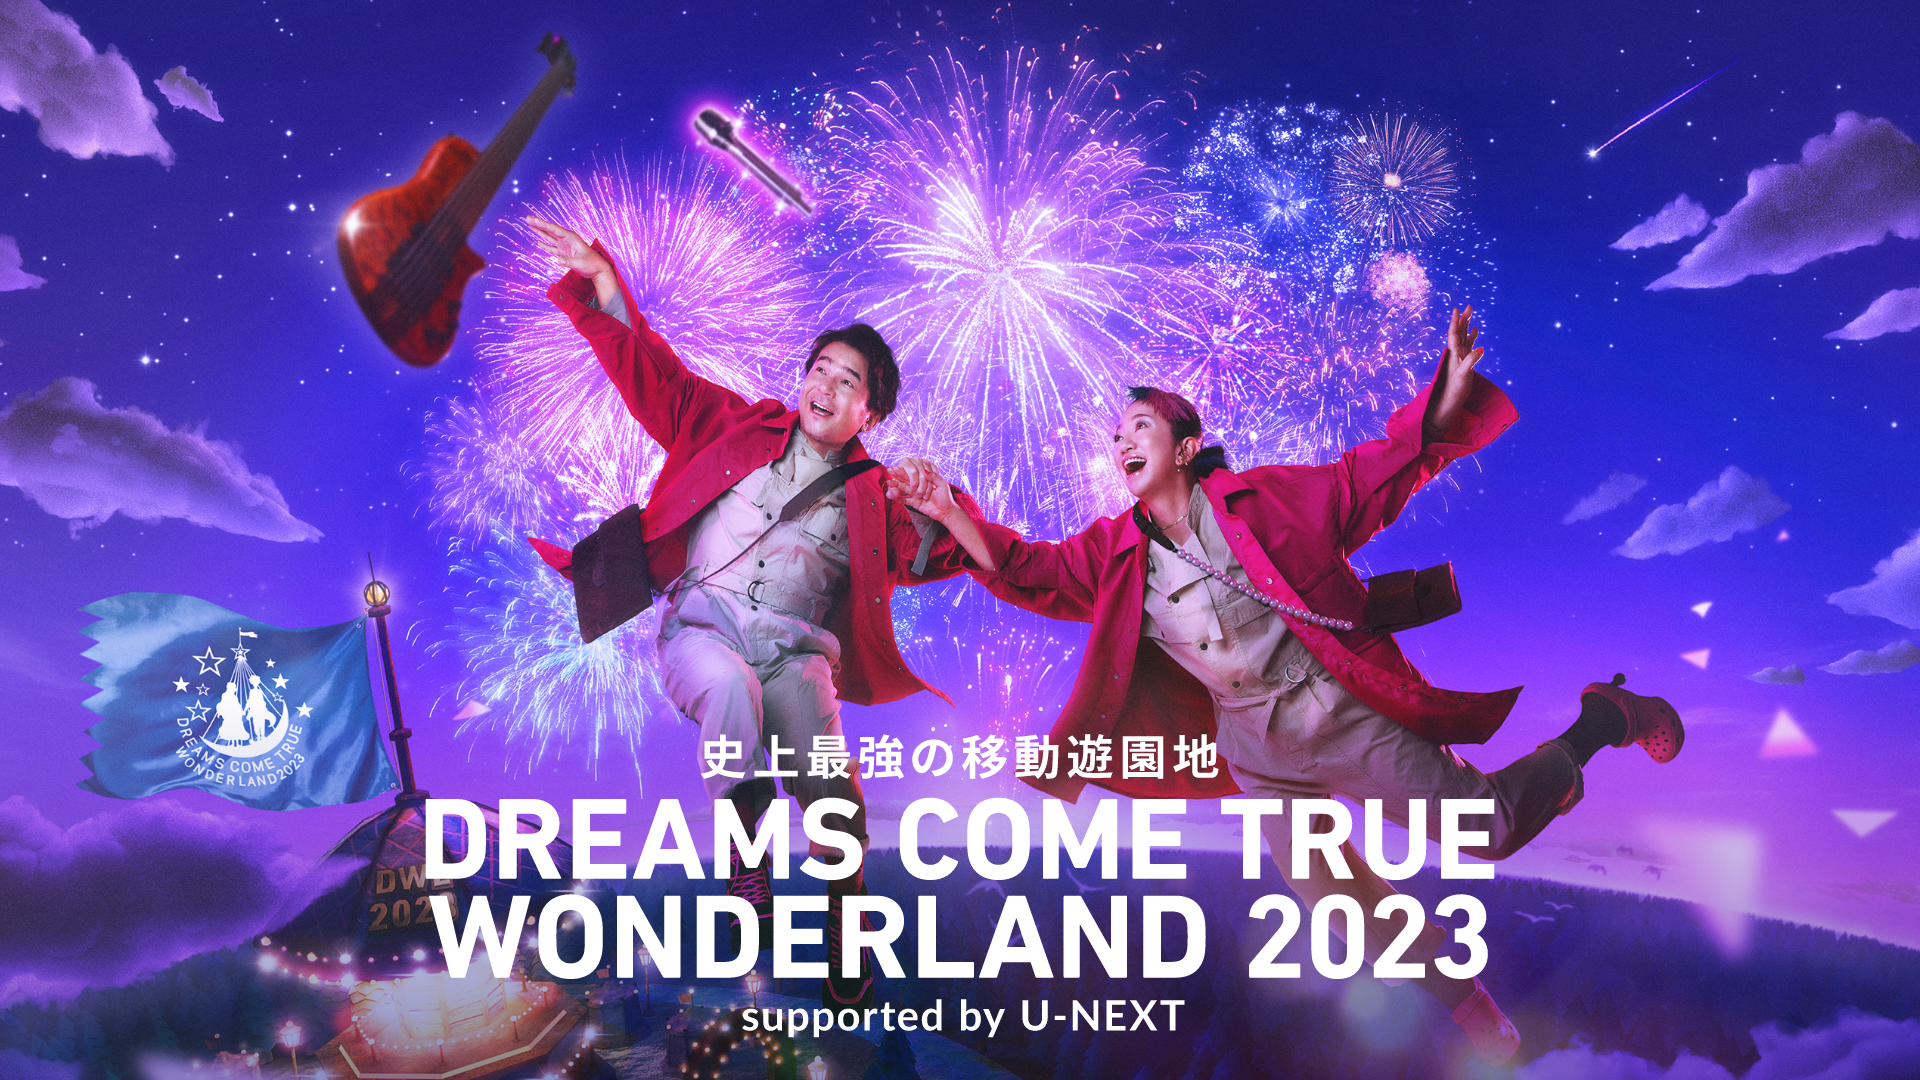 史上最強の移動遊園地 DREAMS COME TRUE WONDERLAND 2023 supported by U-NEXT(音楽・ライブ /  2023) - 動画配信 | U-NEXT 31日間無料トライアル